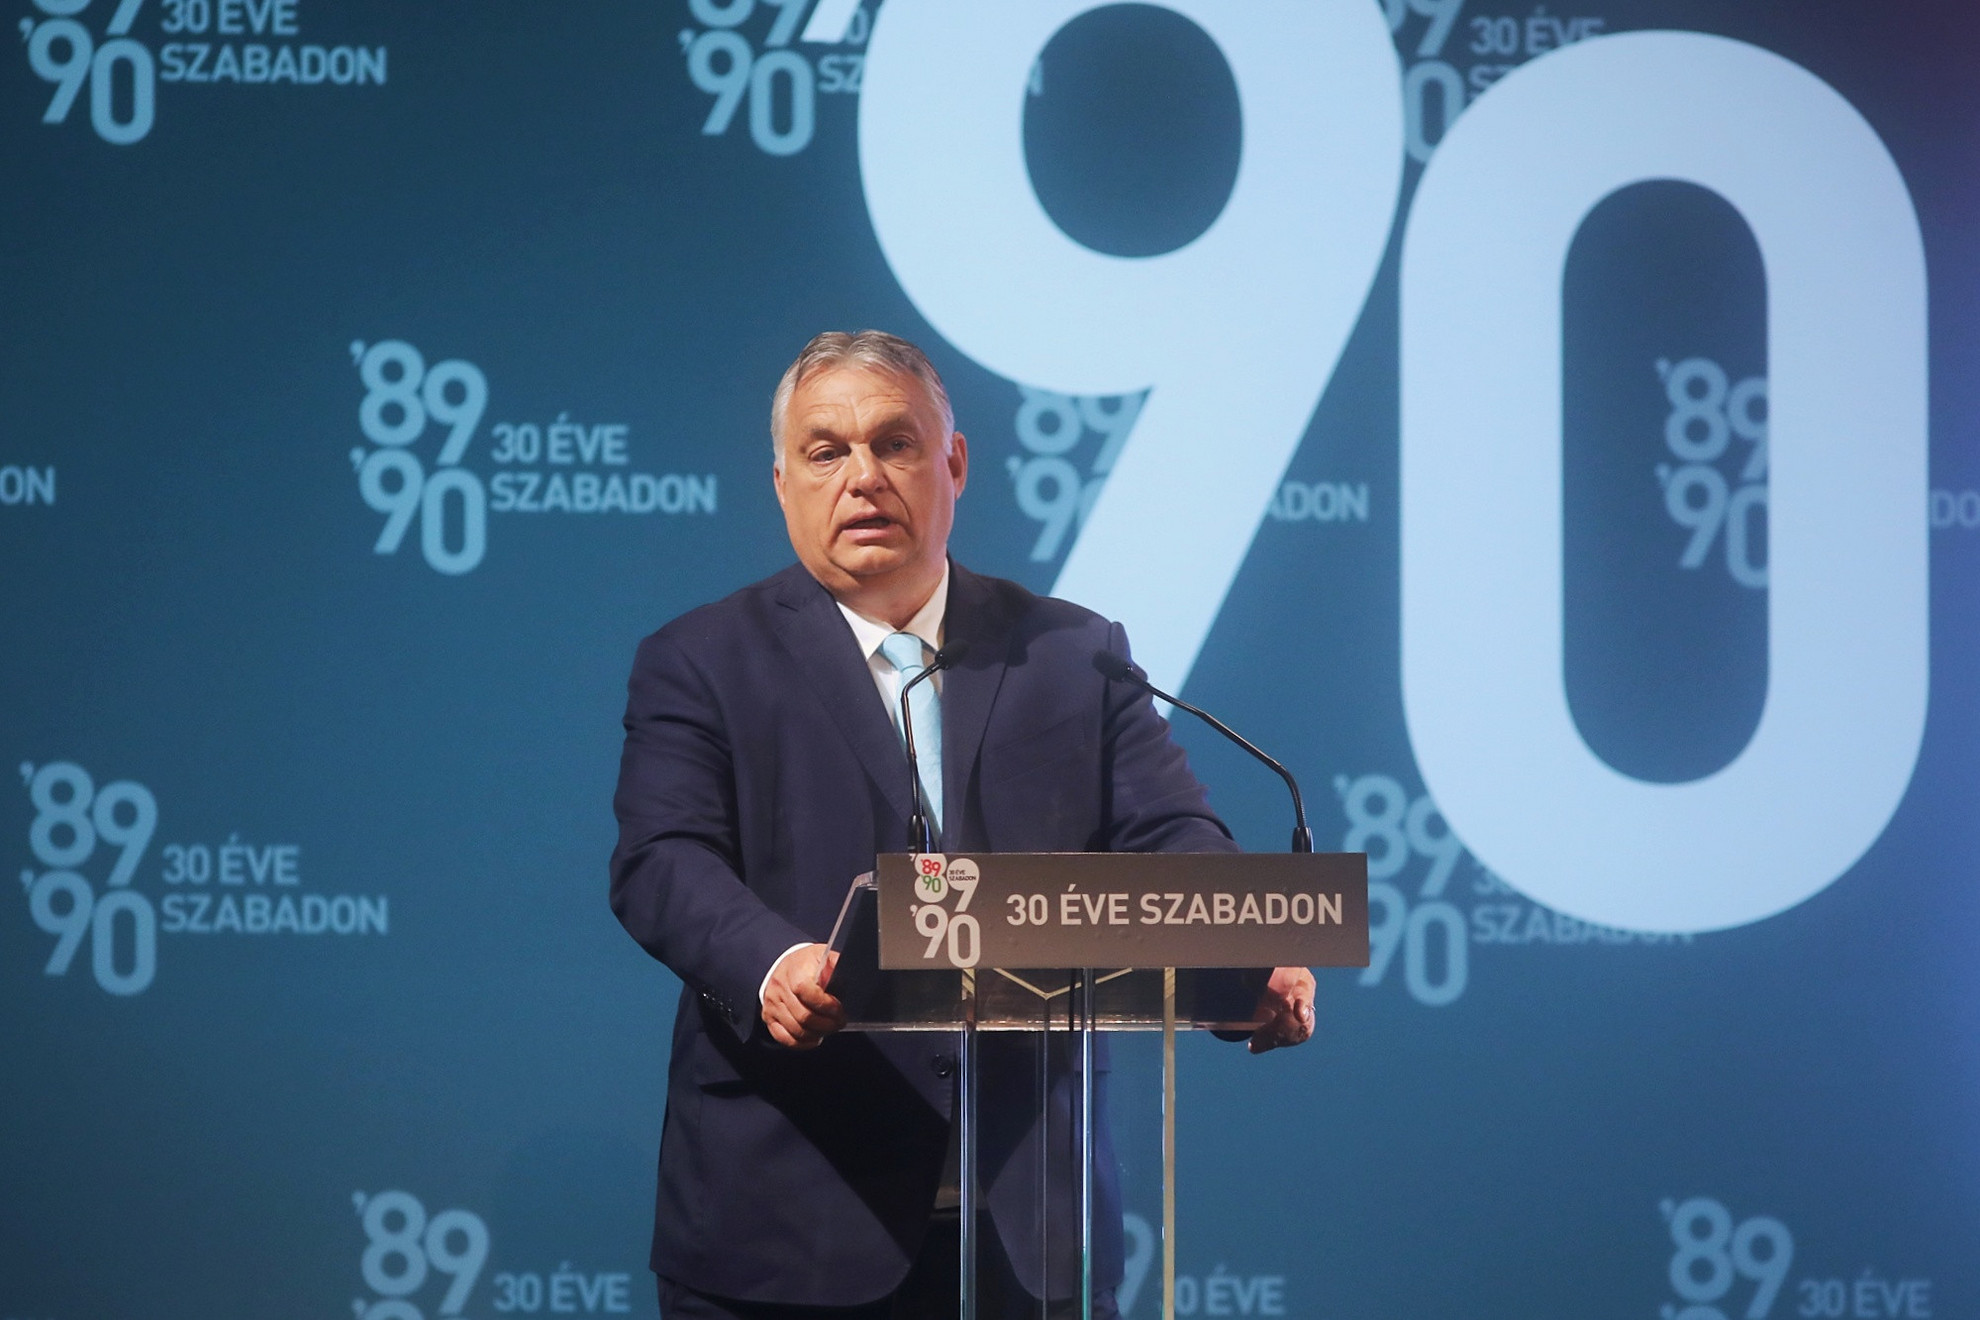 Premierminister Viktor Orbán hält eine Rede zum 30. Jahrestag des Abzugs der sowjetischen Truppen in Vigado in Pest Foto: MH/Péter Papajcsik